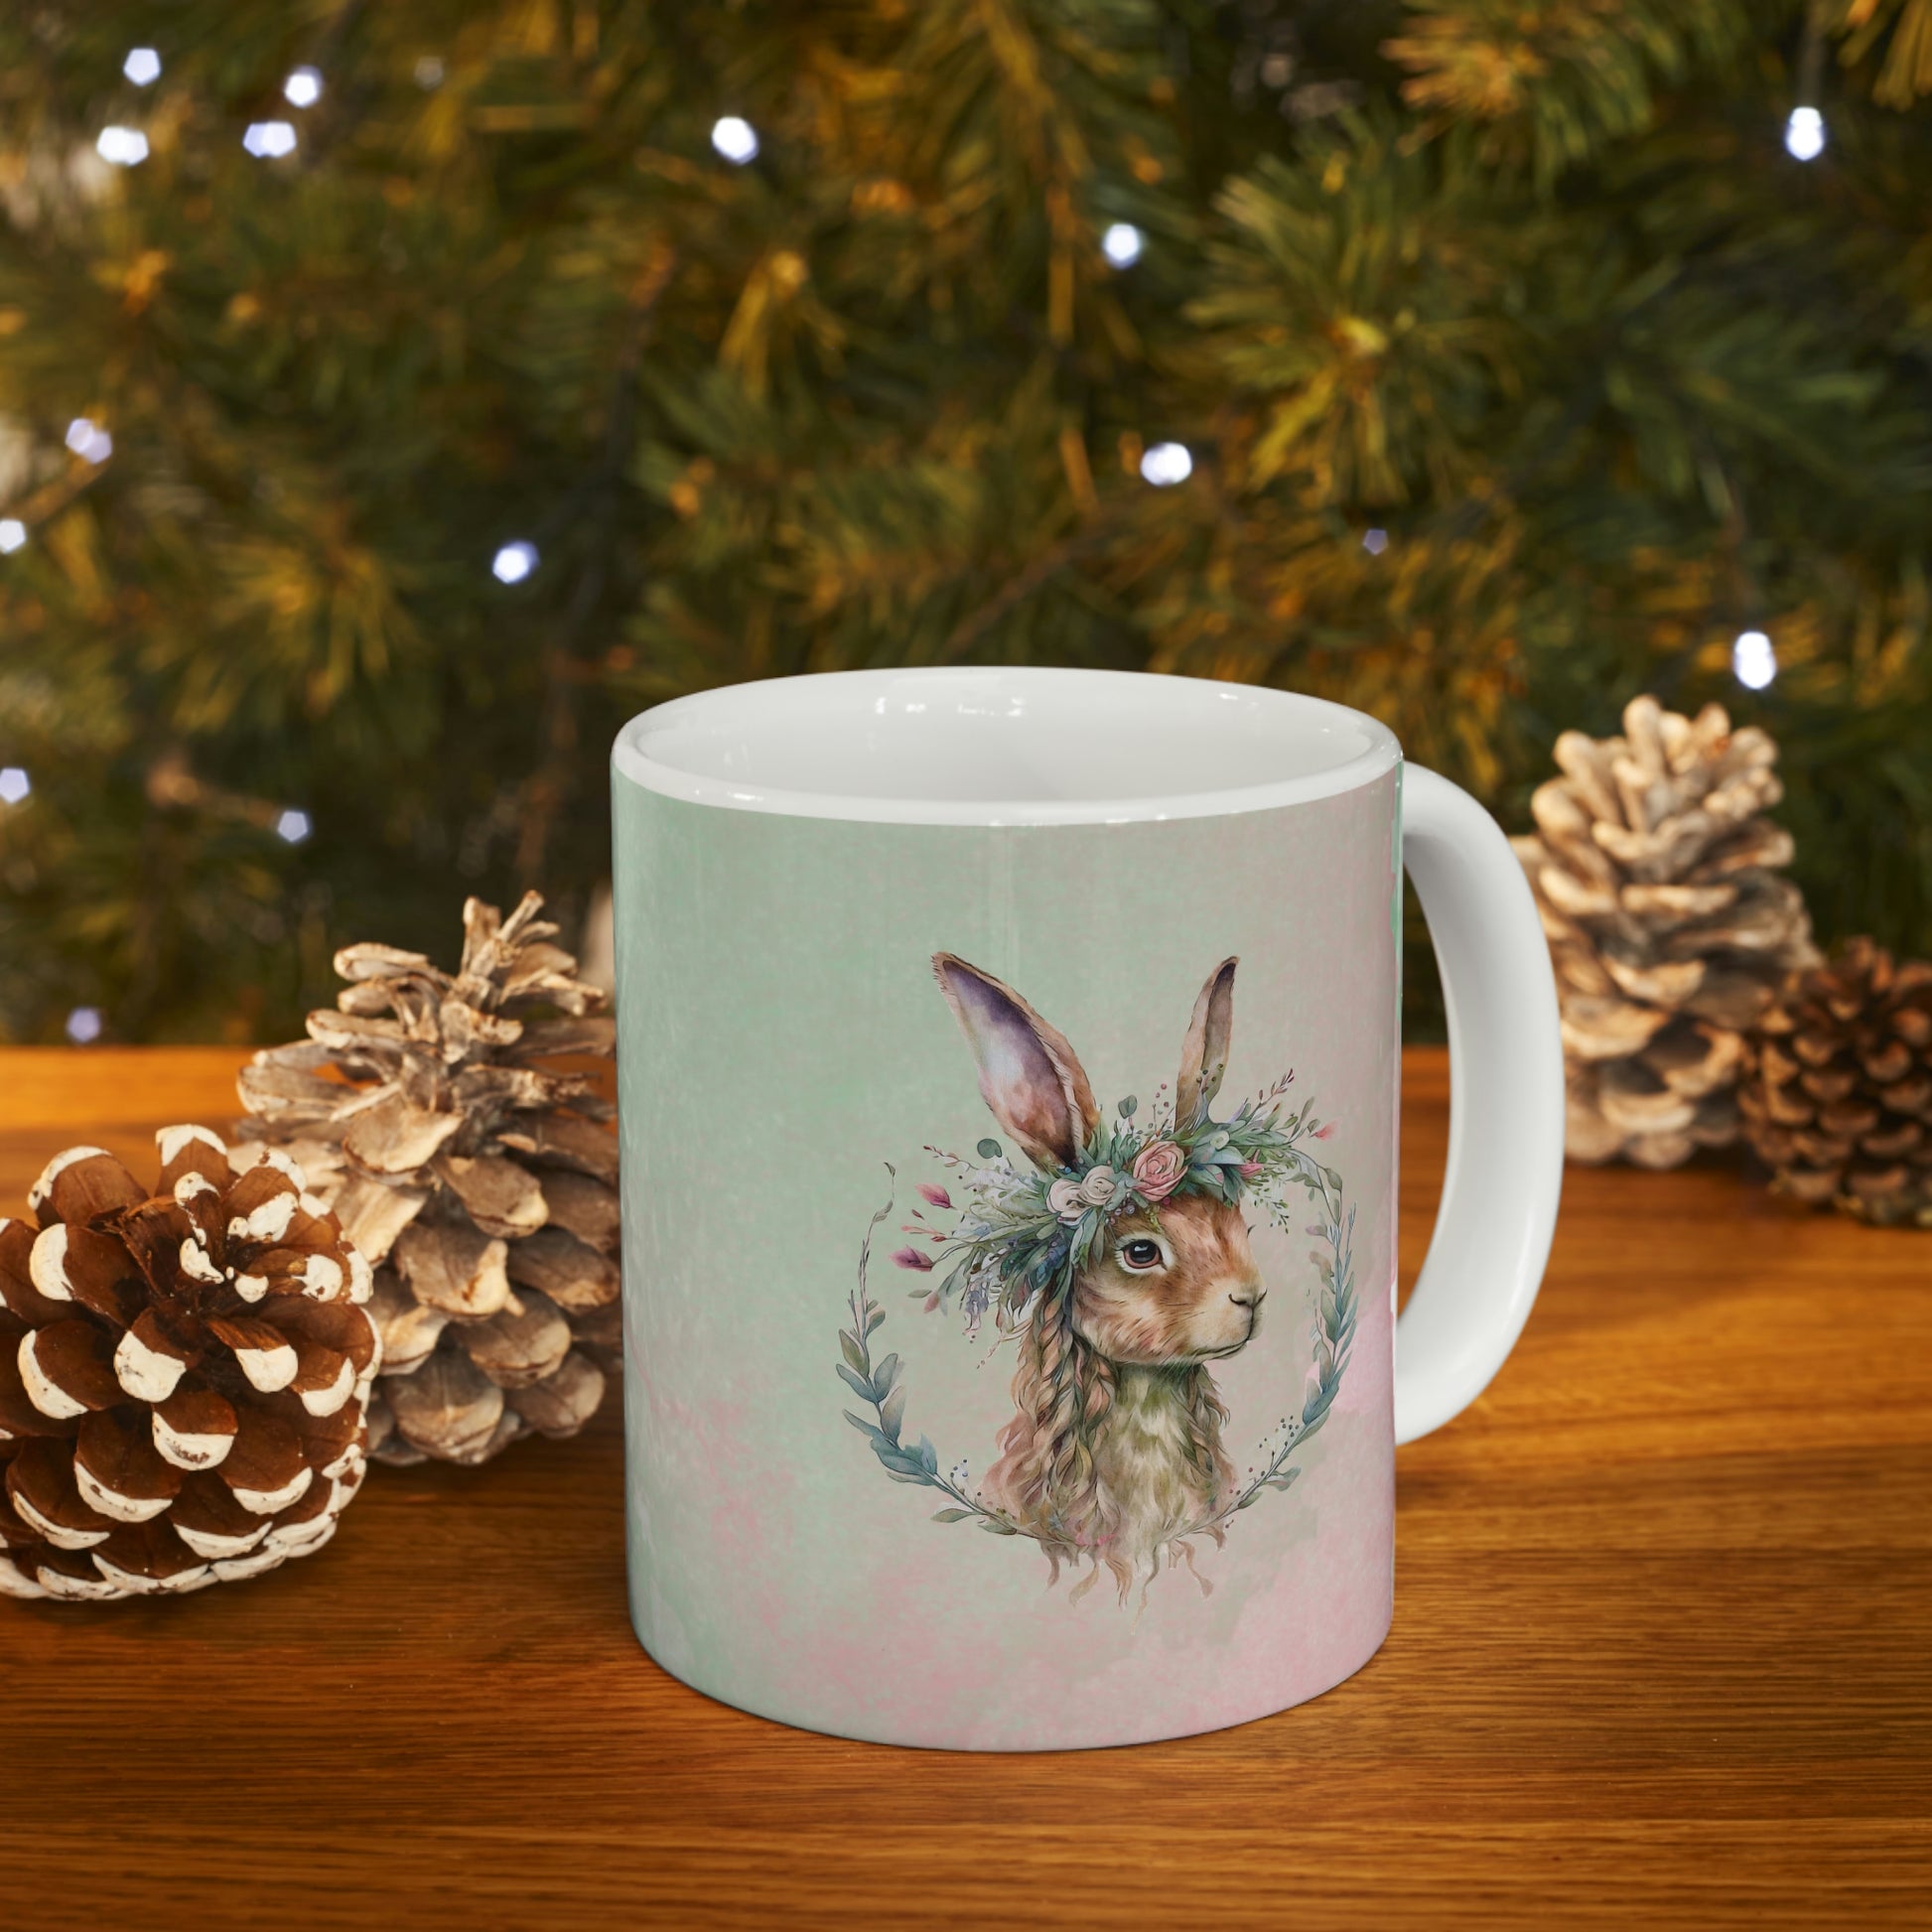 Rabbit in Flowers Watercolor Ceramic Mug 11oz